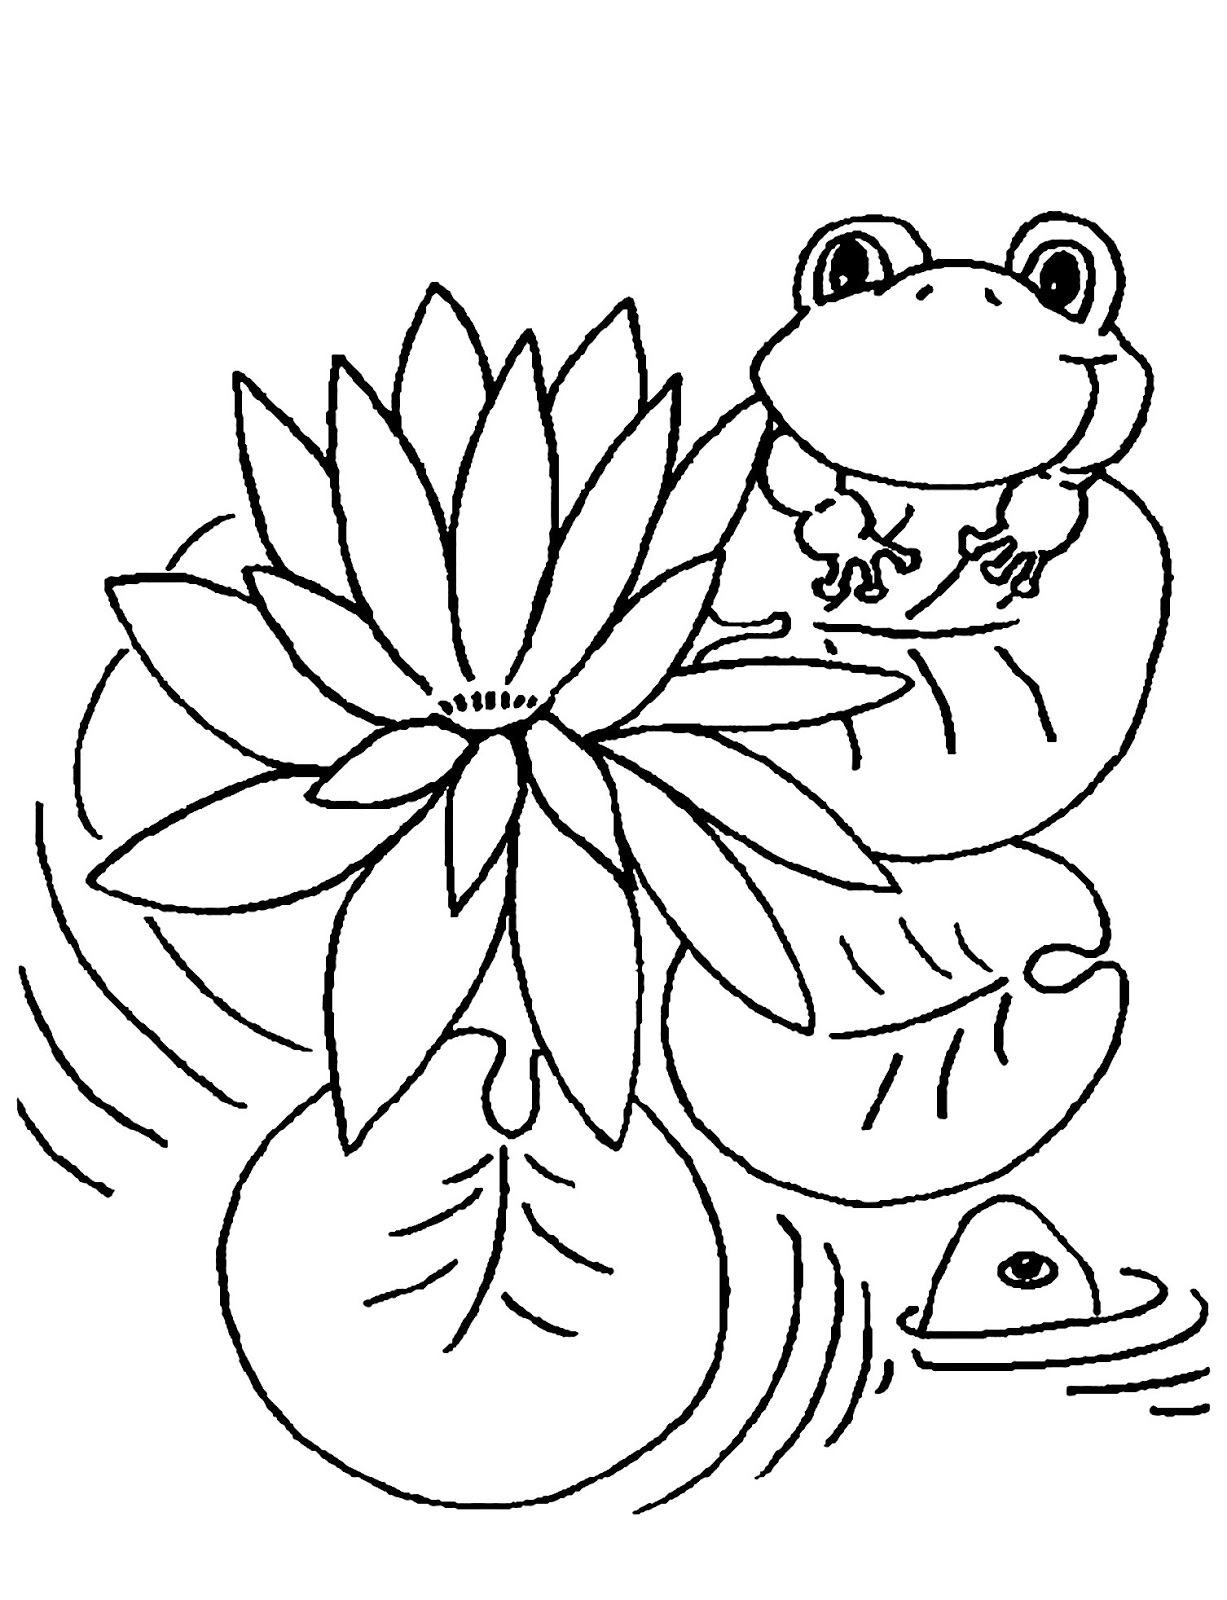 Tranh tô màu chú ếch ngắm hoa